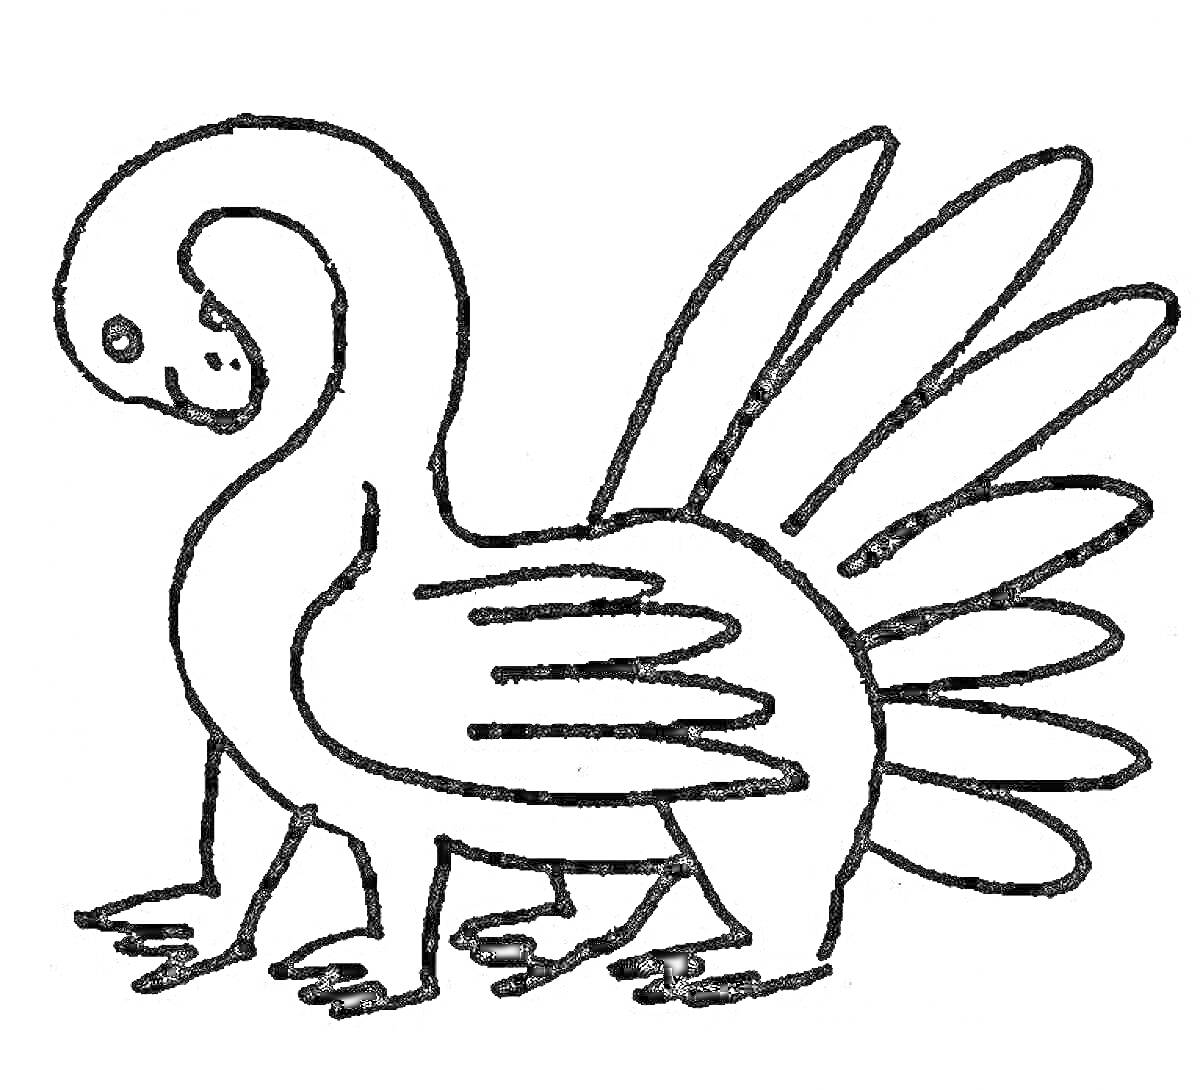 Раскраска Фантастическое животное с четырьмя лапами, шестью крыльями и шестью длинными перьями на хвосте, с длинной шеей и улыбающимся лицом